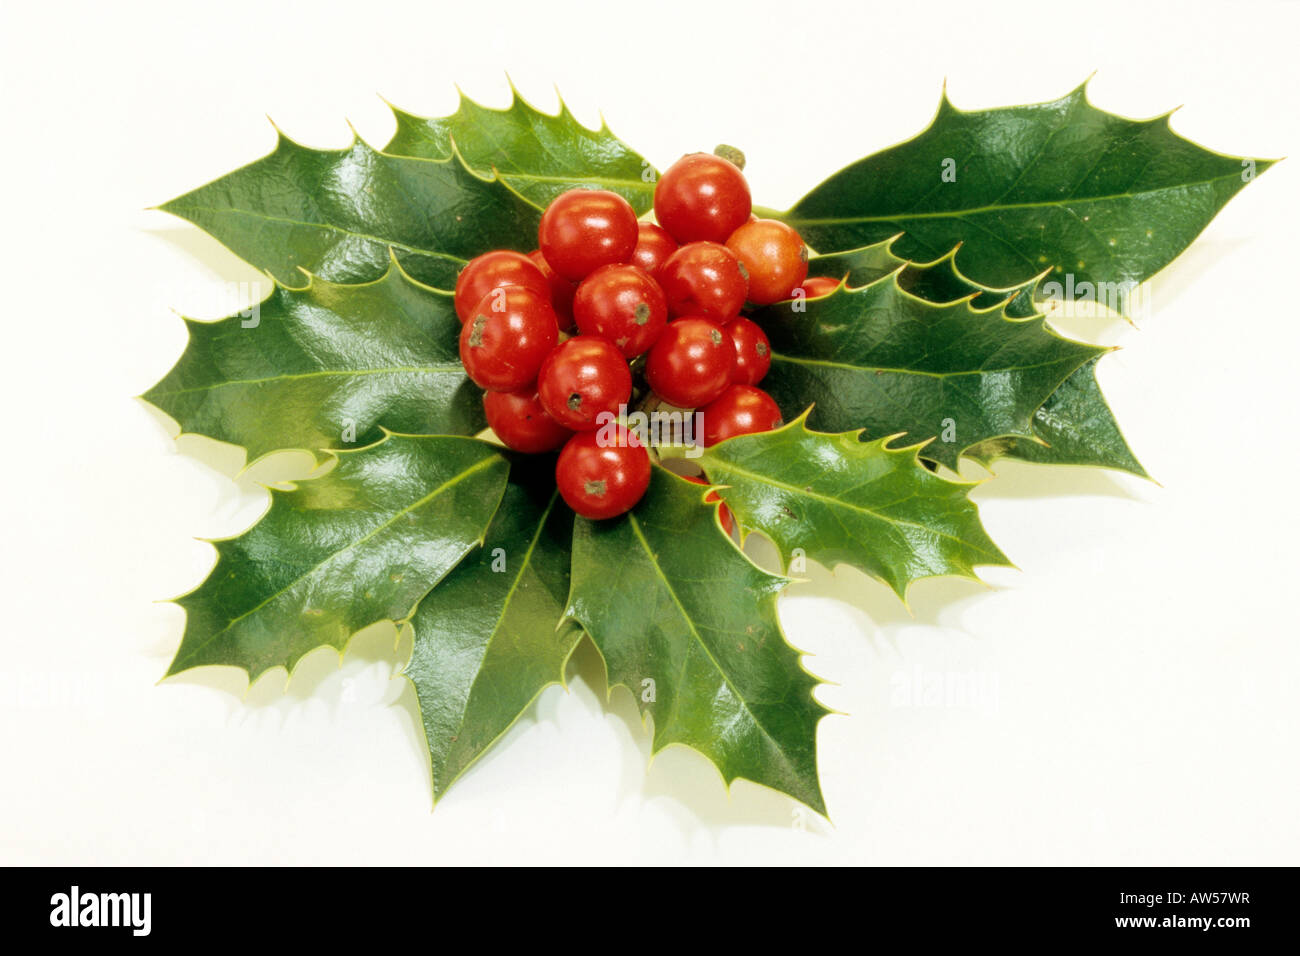 Gemeinsamen Holly, englische Stechpalme (Ilex Aquifolium), Zweig mit Beeren, Studio Bild Stockfoto